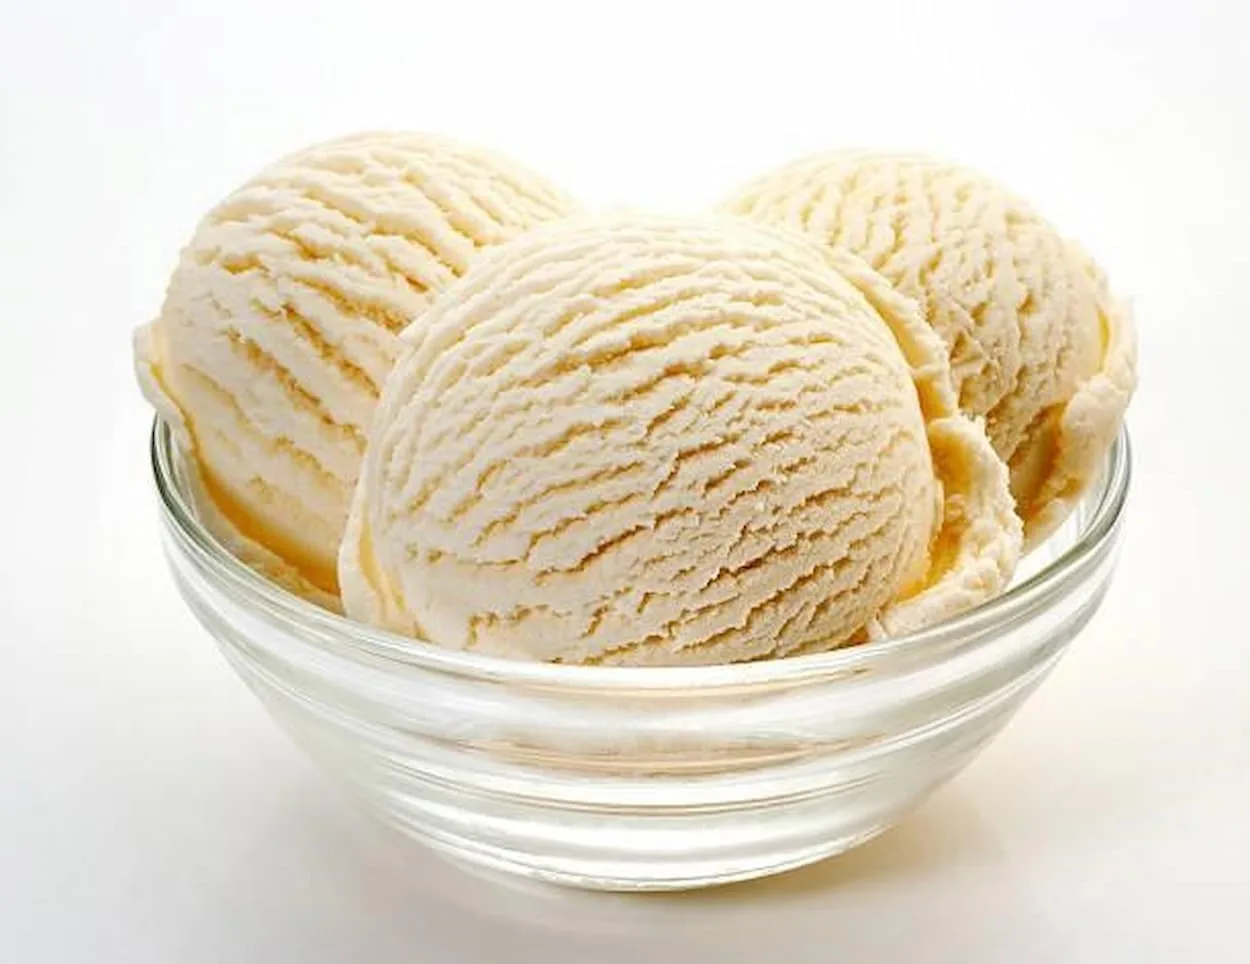  Klassike Vanilla VS Vanilla Bean Ice Cream  - Alle ferskillen